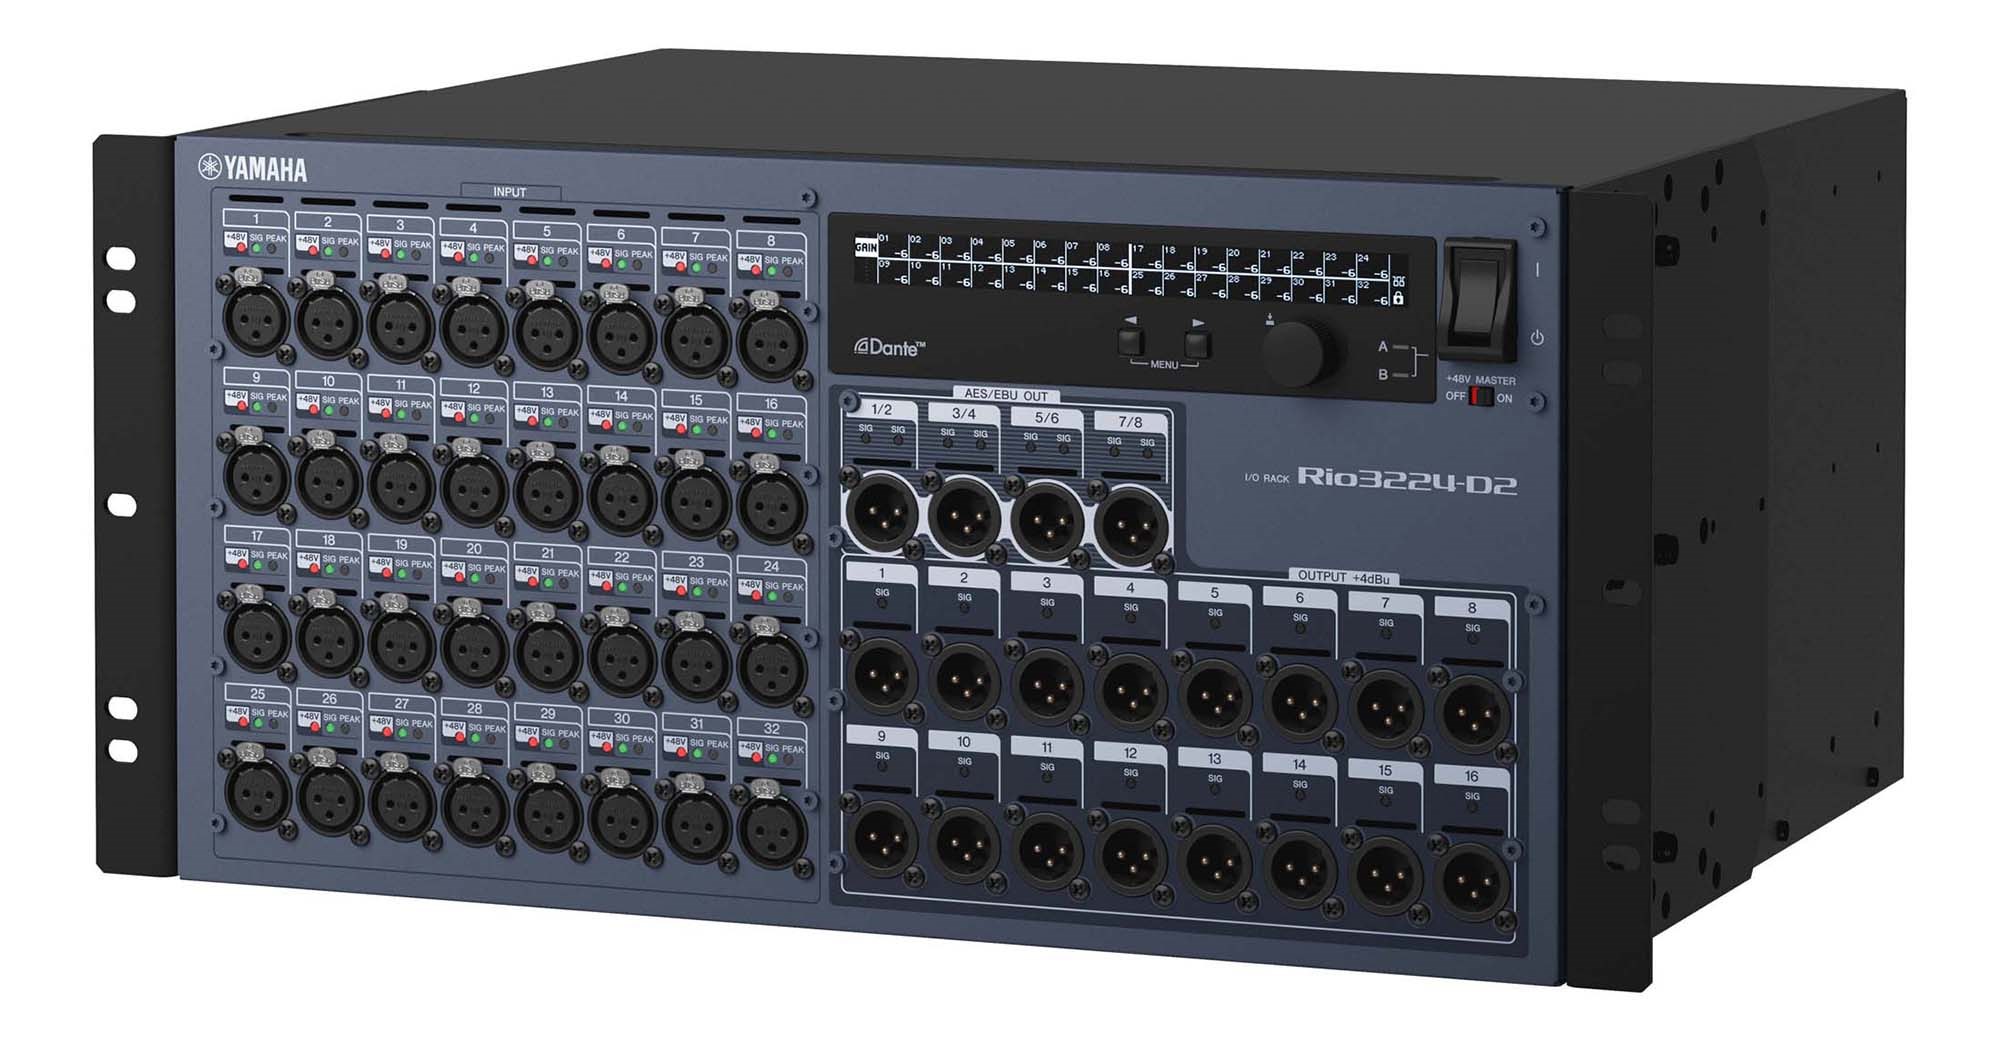 Устройства ввода/вывода со встроенными функциями сетевого аудиопротокола Dante, 32 аналоговых входа, 16 аналоговых и 8 цифровых выходов Rio3224-D2 YAMAHA